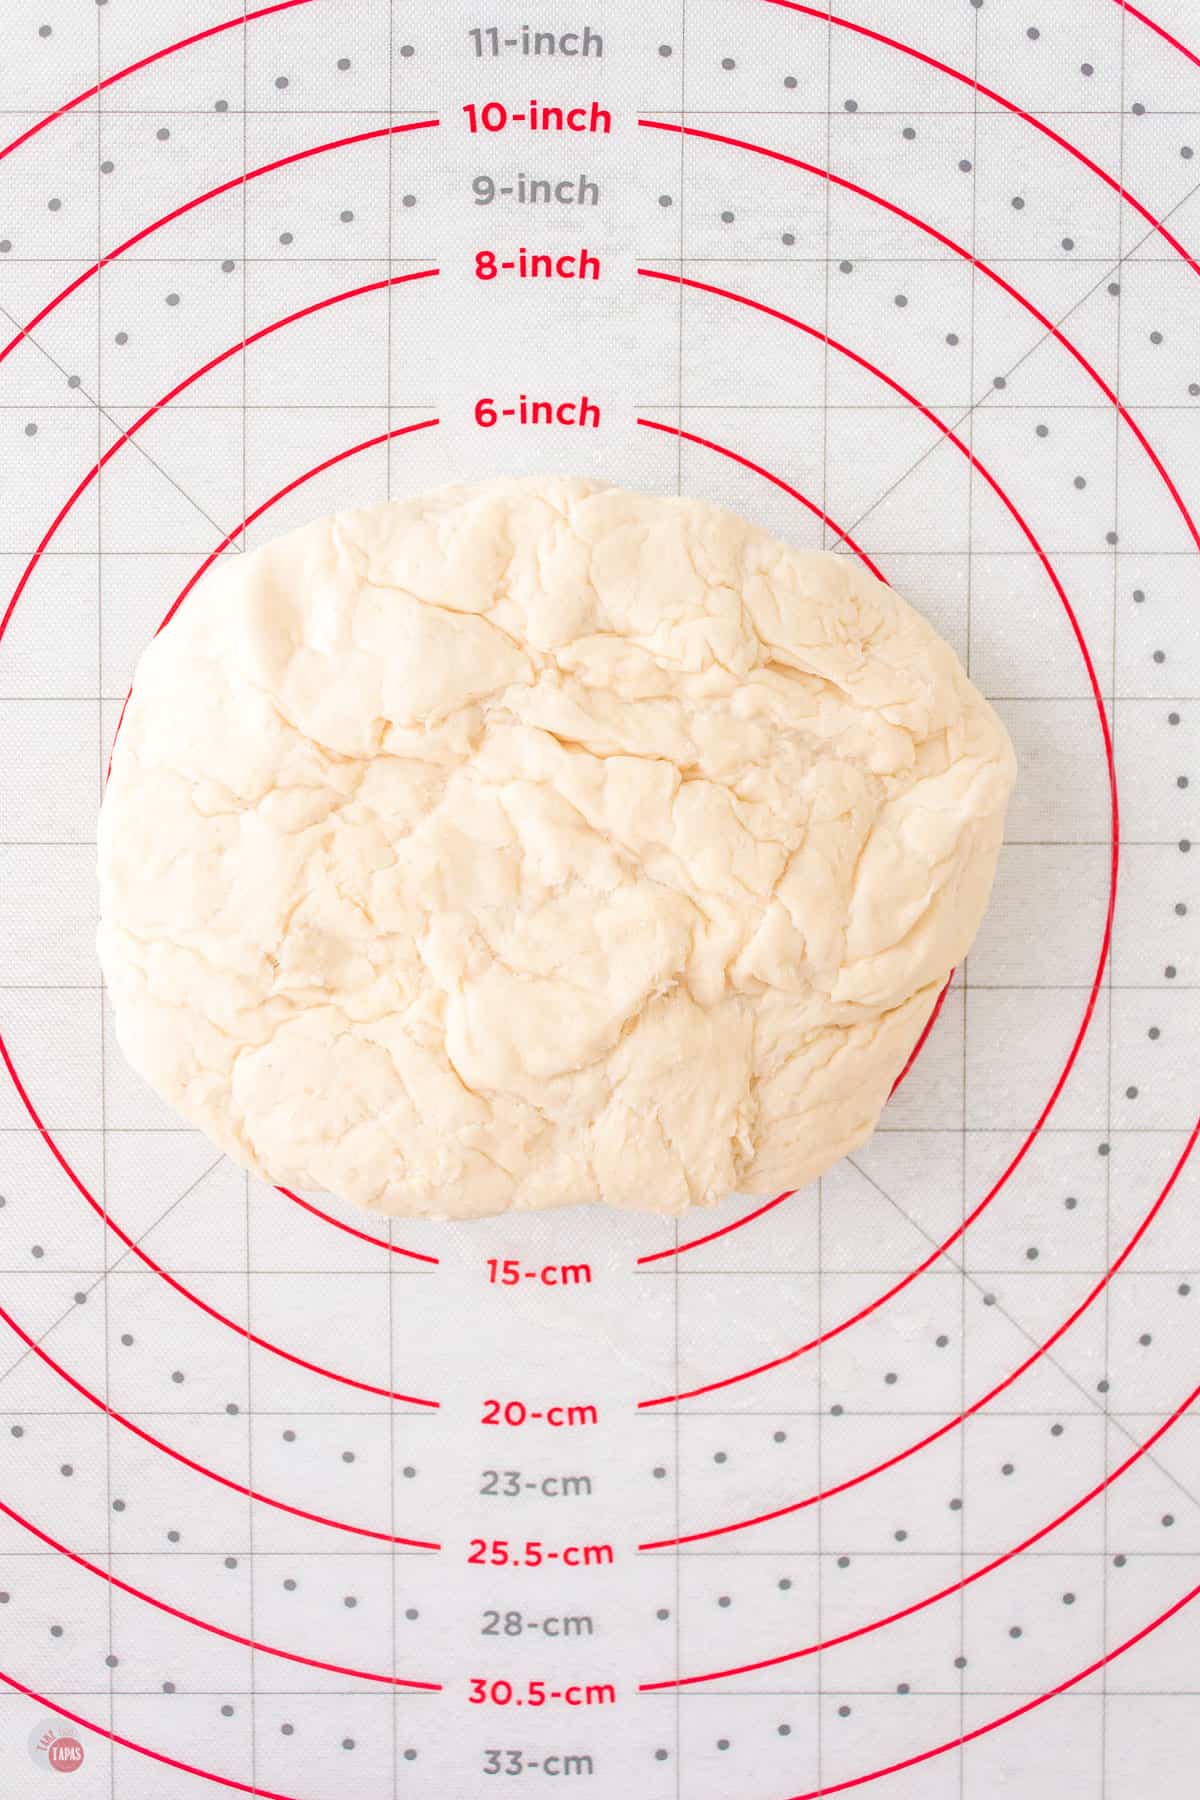 ball of dough